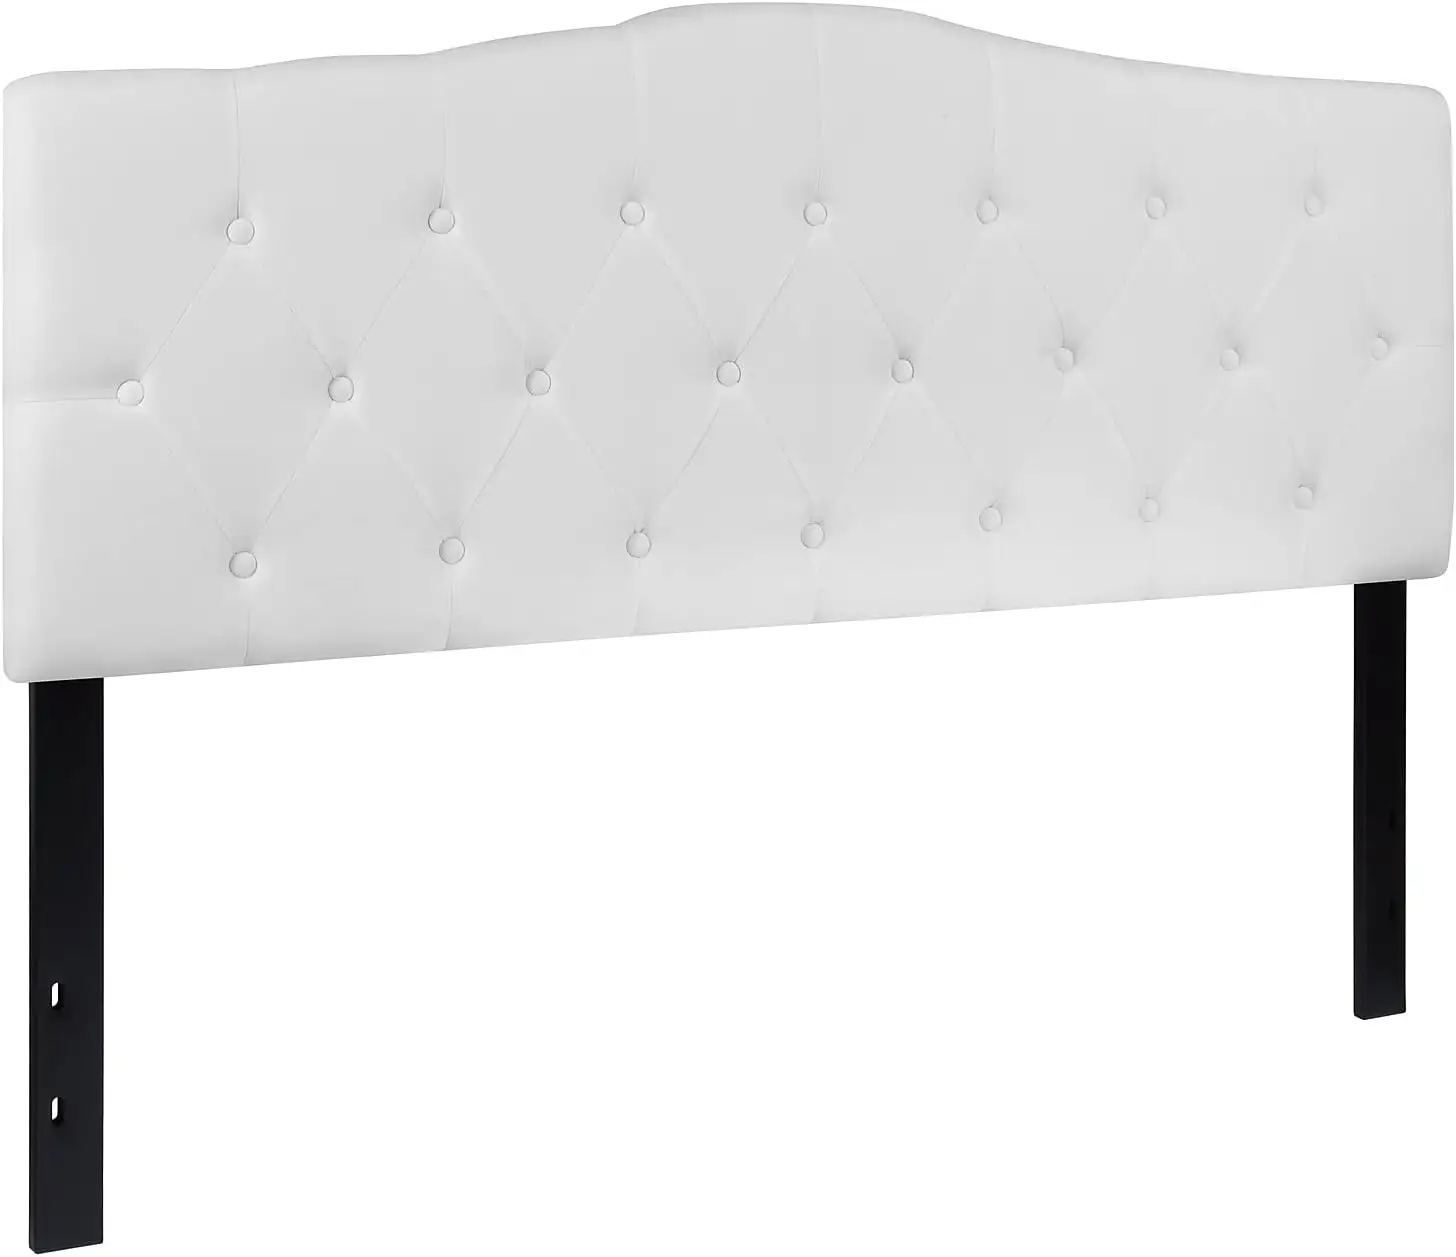 TRIHO Tête de lit rembourrée en lin HB-0112 American Standard pour lit Queen Size Tufted Double Wingback pour chambre à coucher